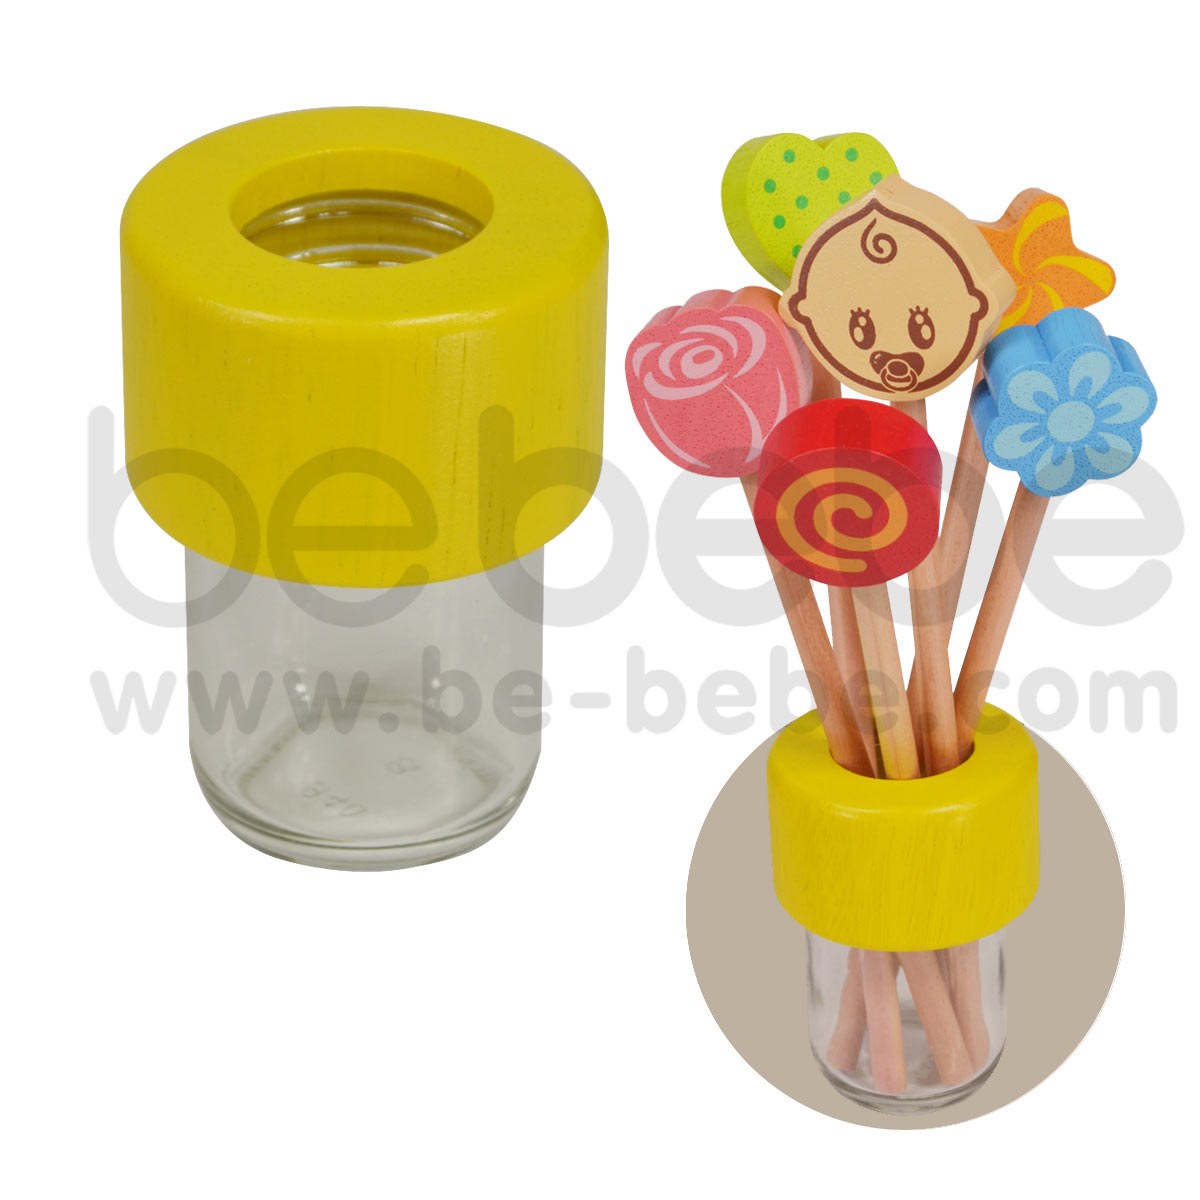 bebebe : Vase/Yellow